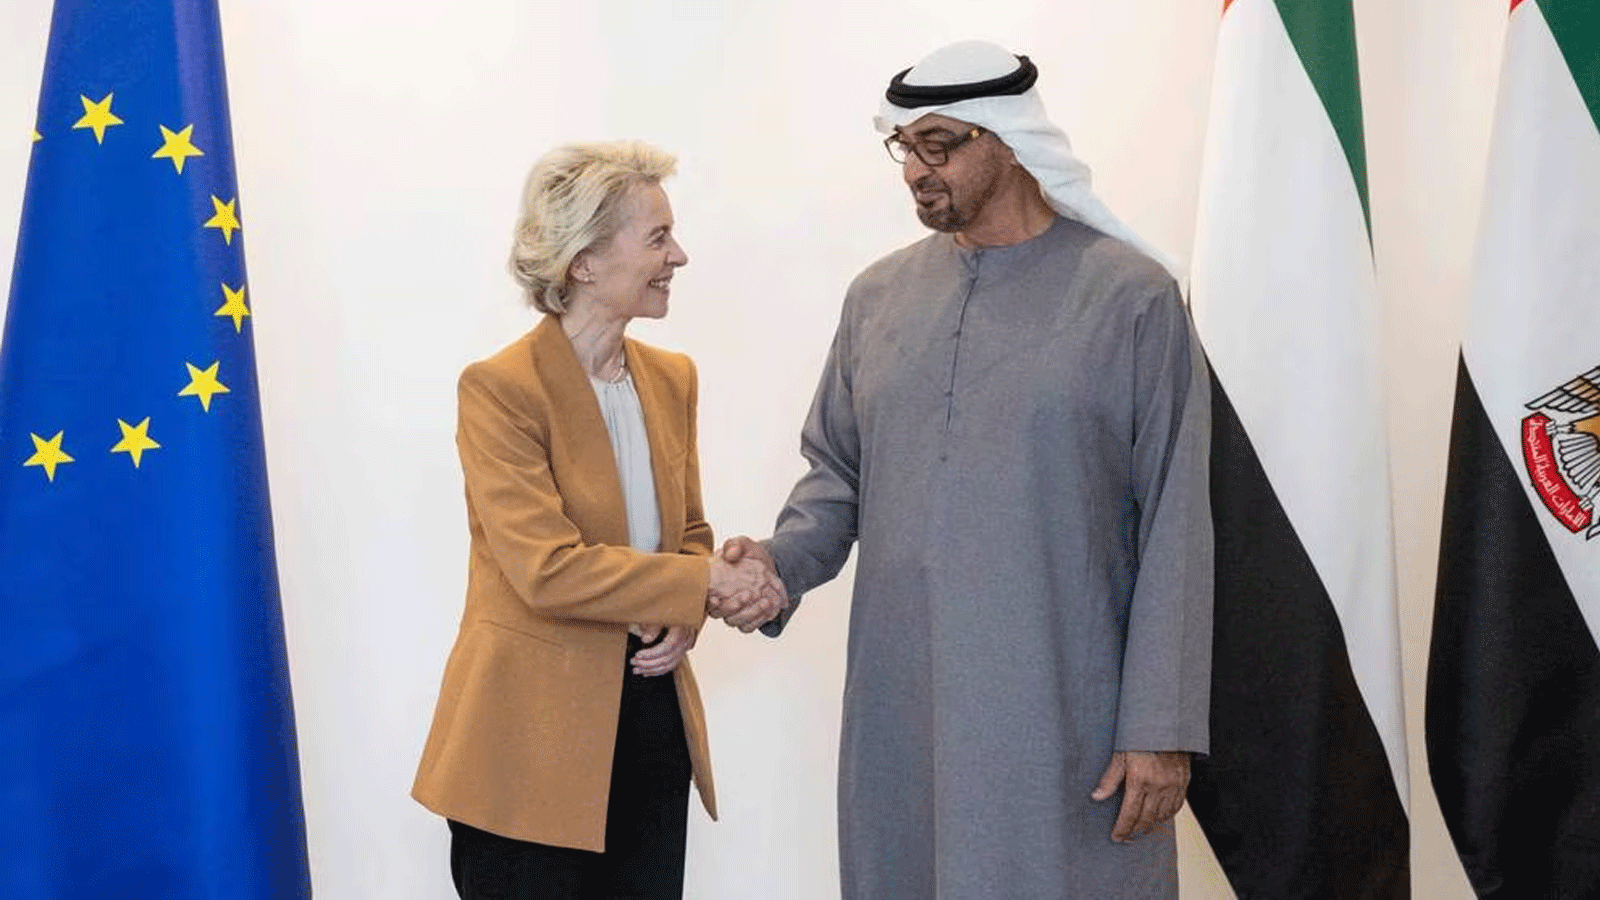 رئيس دولة الإمارات الشيخ محمد بن زايد آل نهيان يستقبل رئيسة المفوضية الأوروبية أورسولا فون دير لايين في أبو ظبي